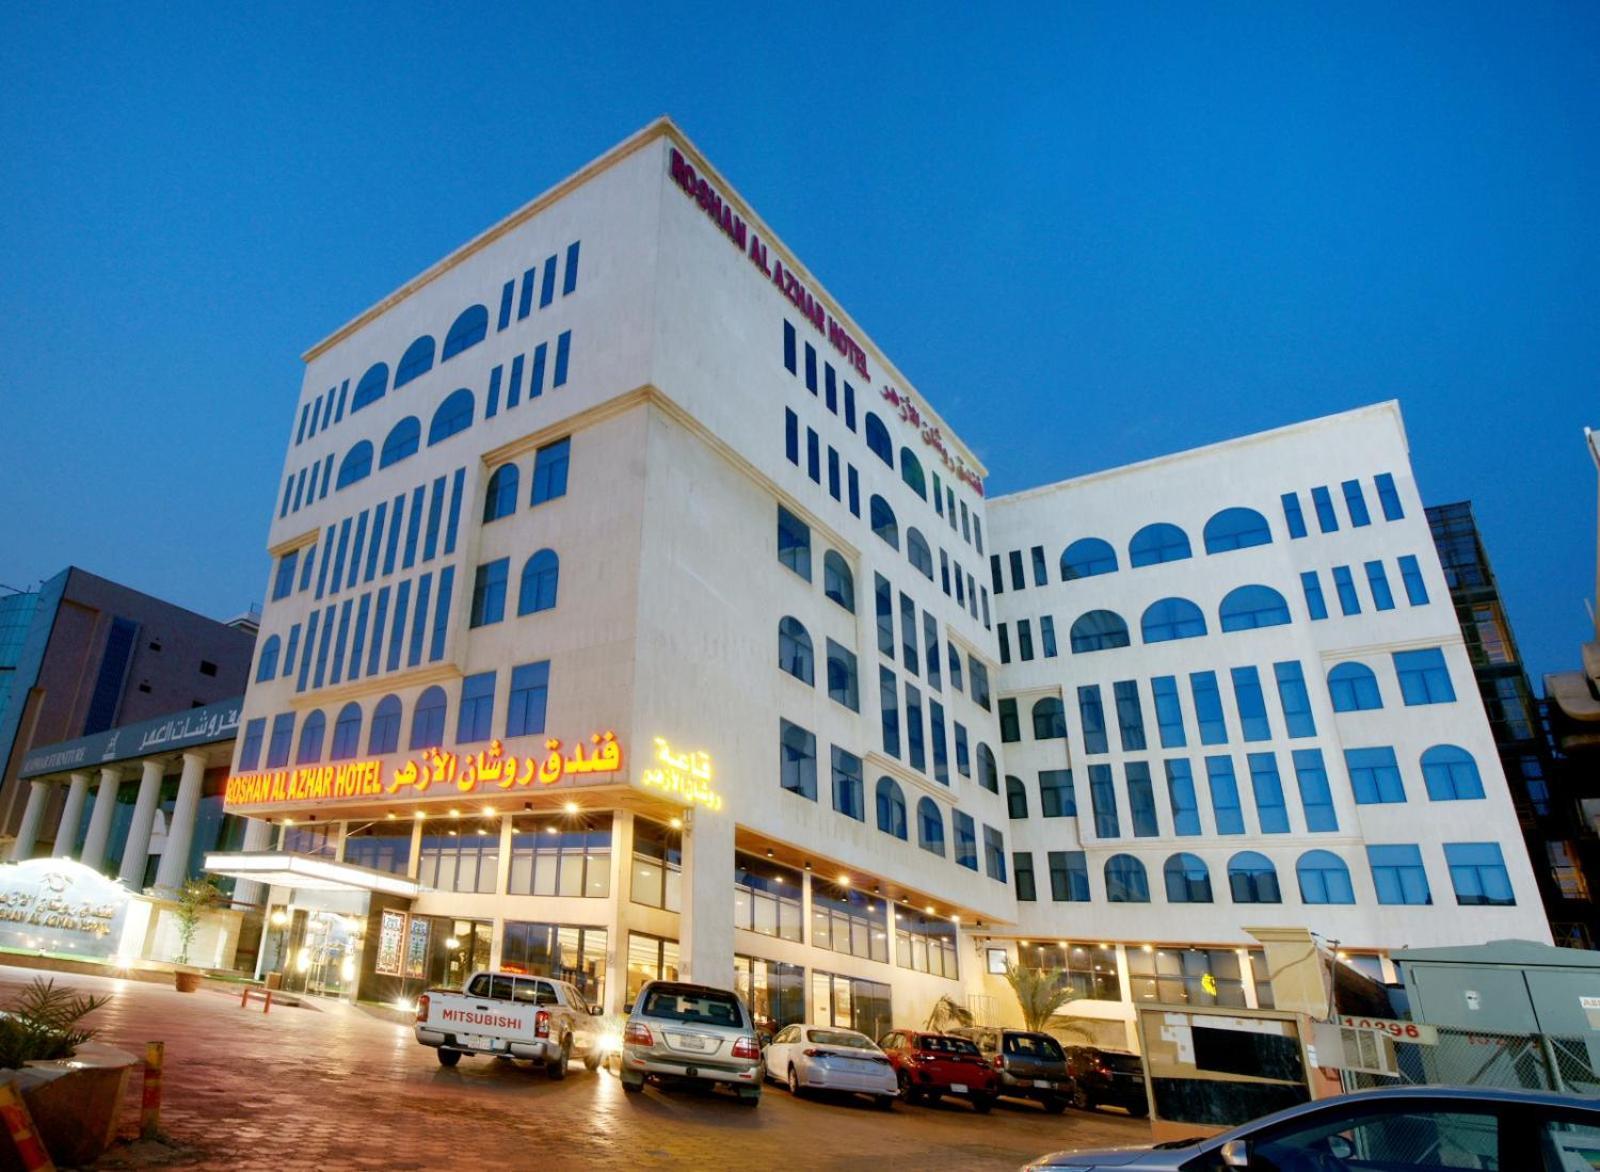 Roshan Al Azhar Hotel Jeddah Exterior foto